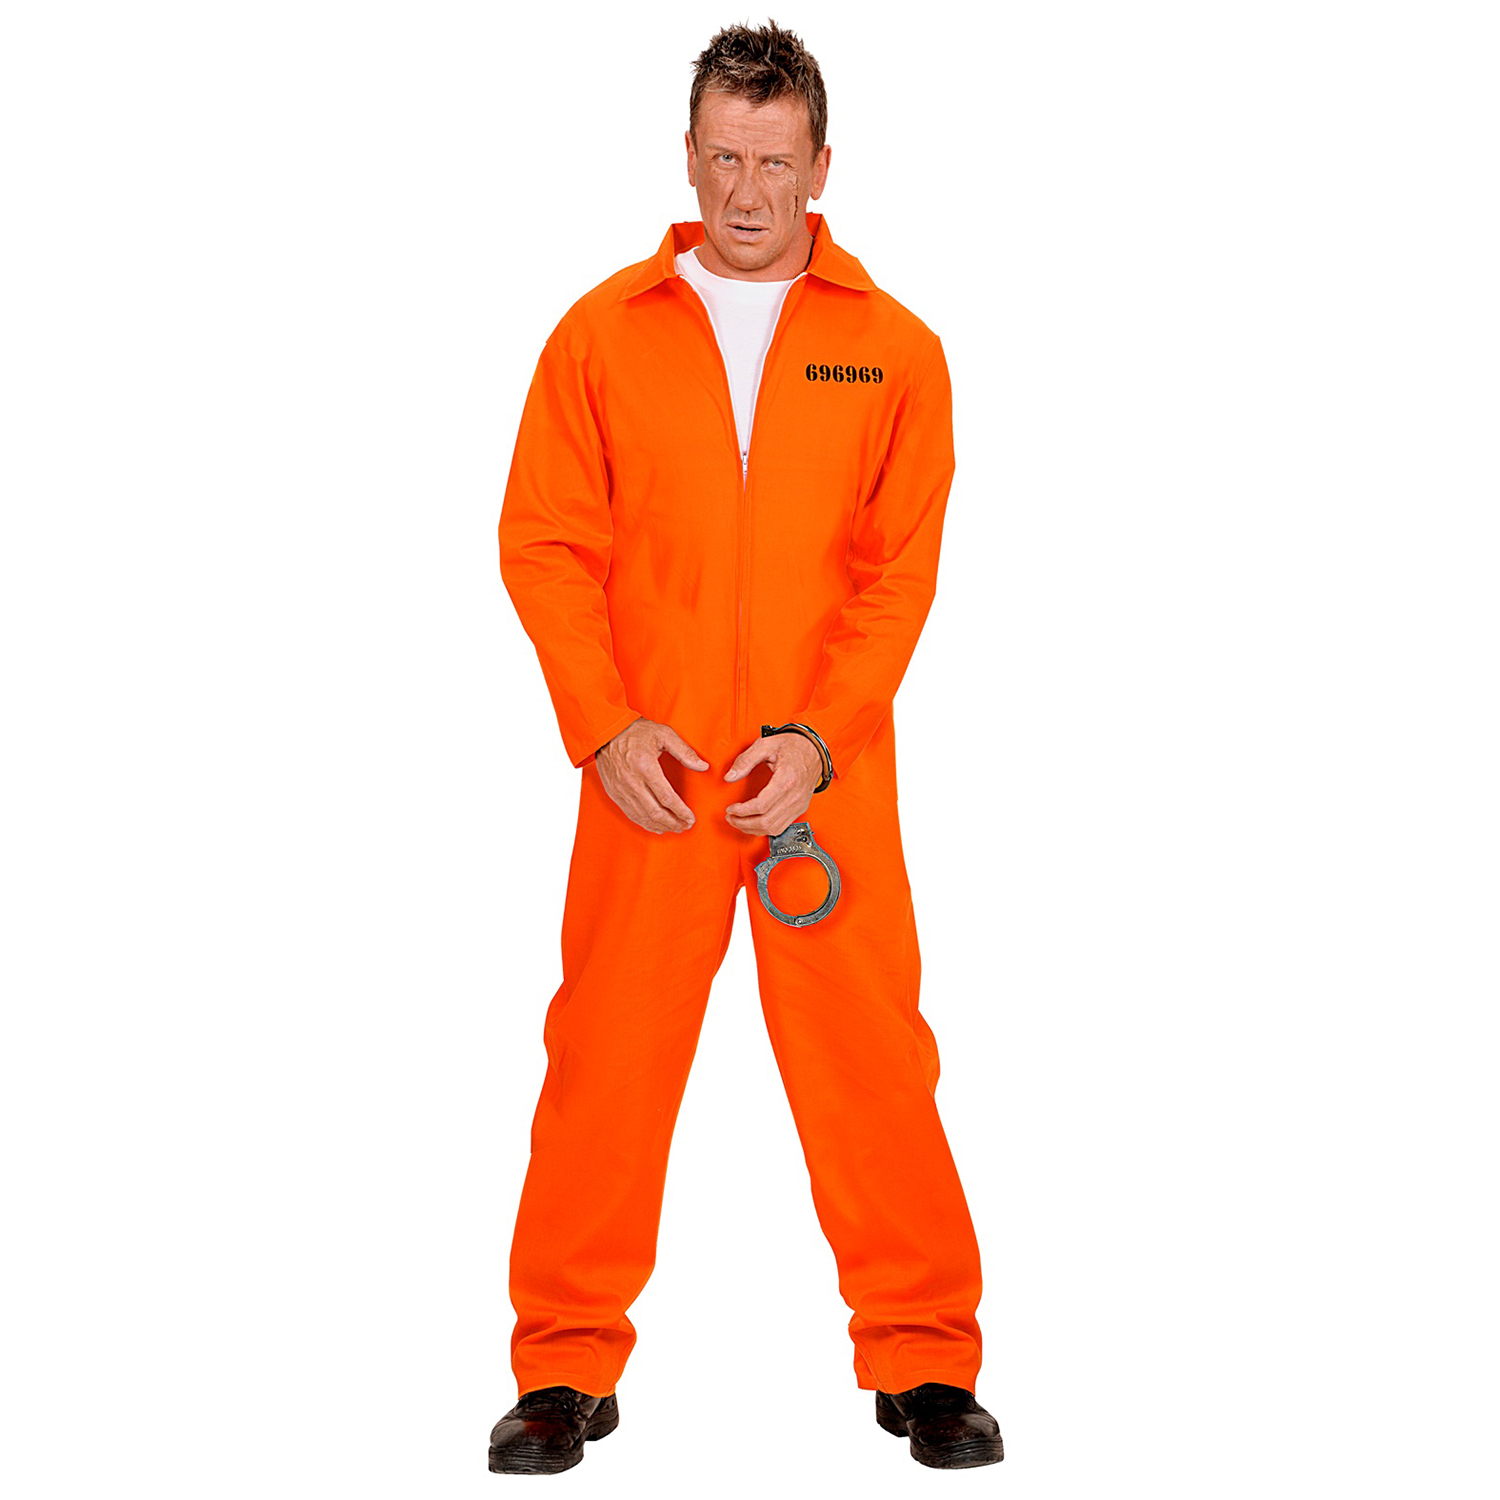 NEU Kostüm Amerikanischer Häftling / Sträfling, Overall, Orange, Größe S